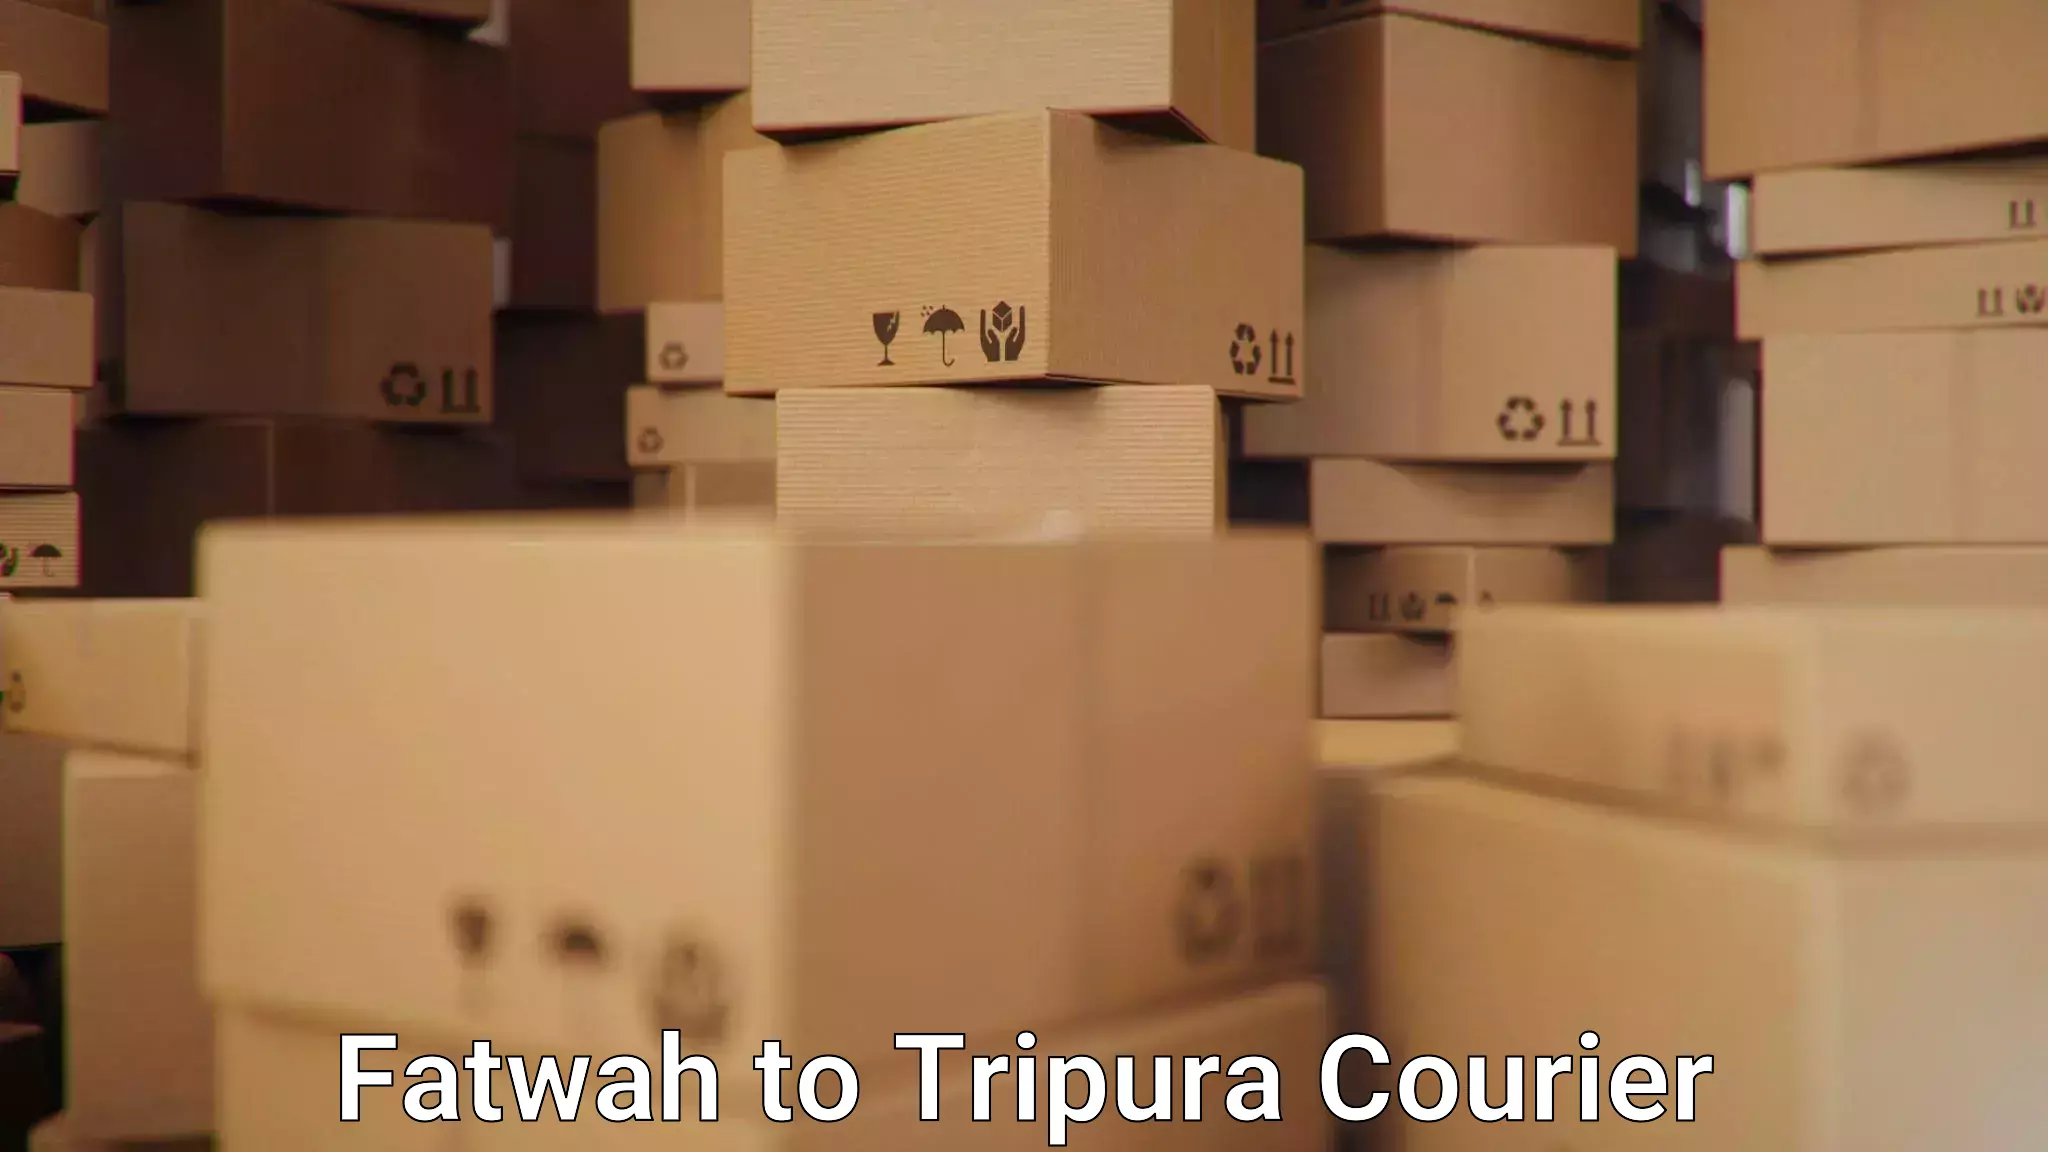 Efficient logistics management Fatwah to Udaipur Tripura